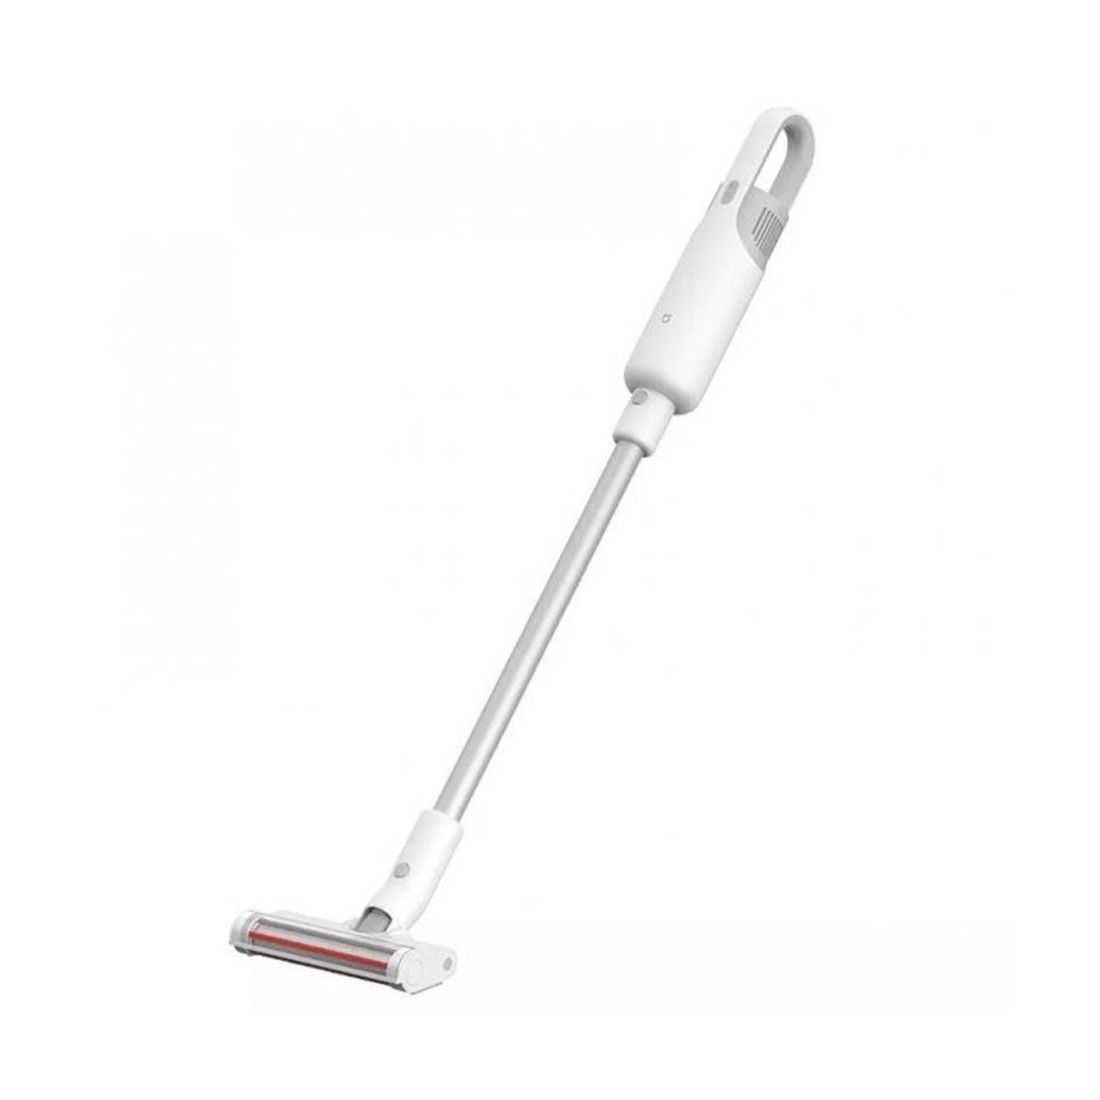 Беспроводной вертикальный пылесос Xiaomi Mi Handheld Vacuum Cleaner Light Белый, фото 1